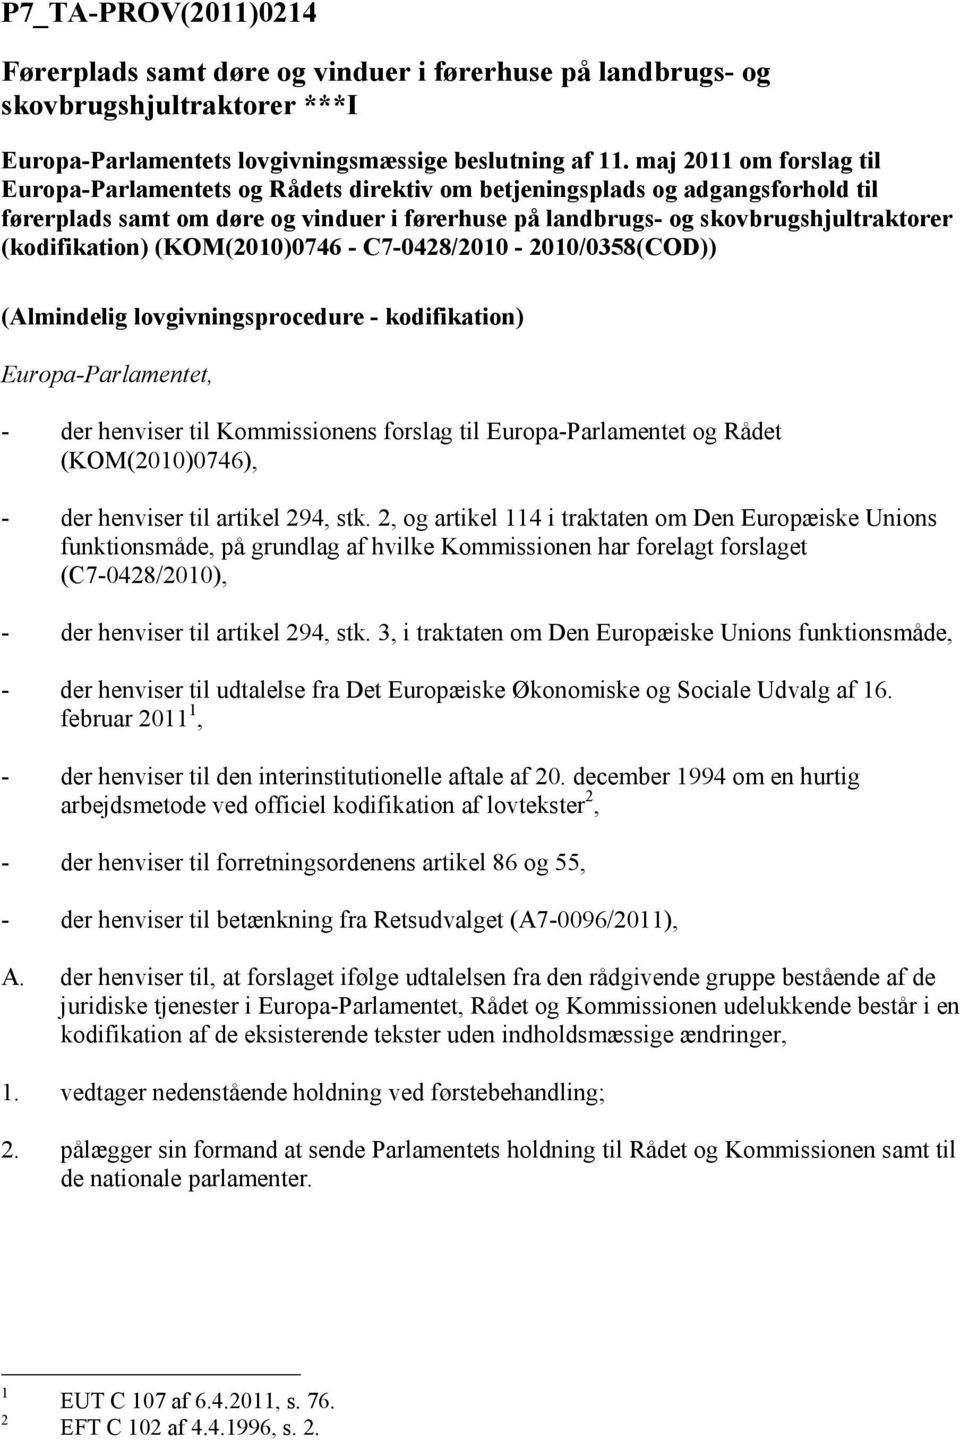 (kodifikation) (KOM(2010)0746 - C7-0428/2010-2010/0358(COD)) (Almindelig lovgivningsprocedure - kodifikation) Europa-Parlamentet, - der henviser til Kommissionens forslag til Europa-Parlamentet og